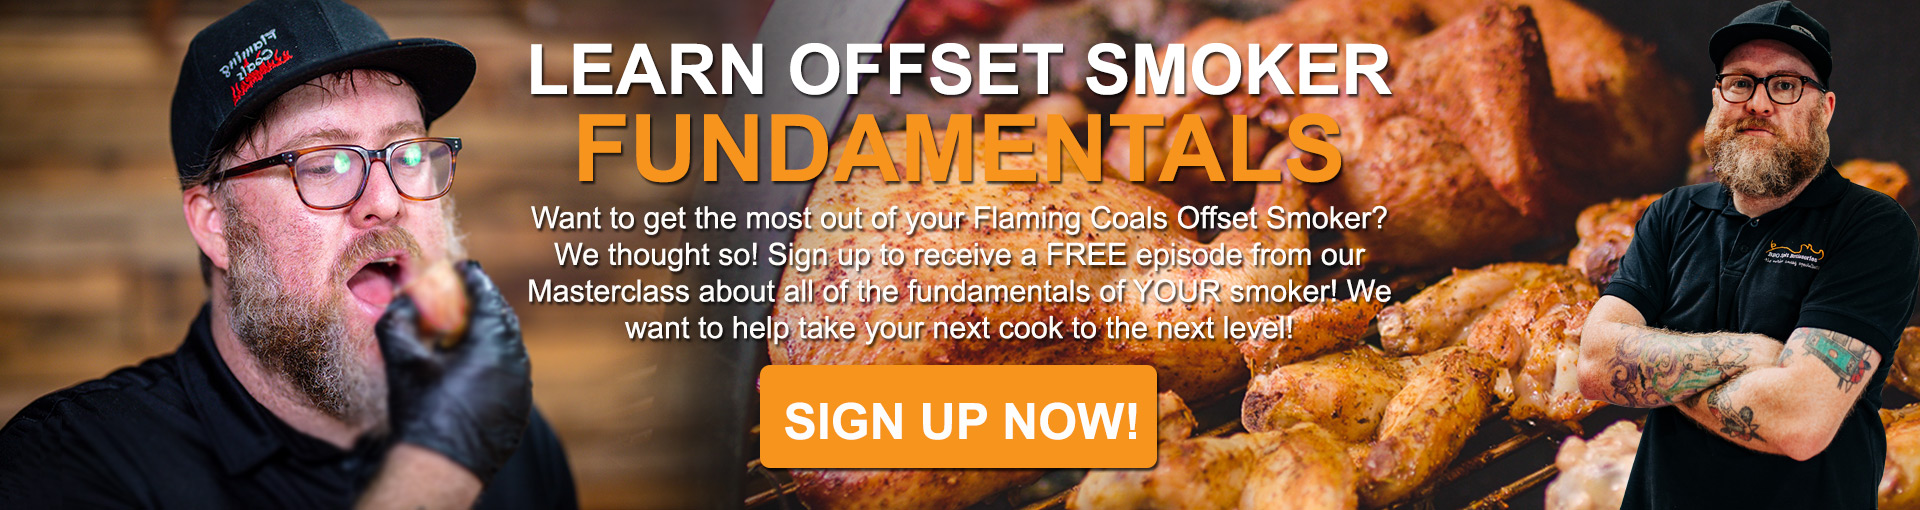 Learn Offset Smoker Fundamentals